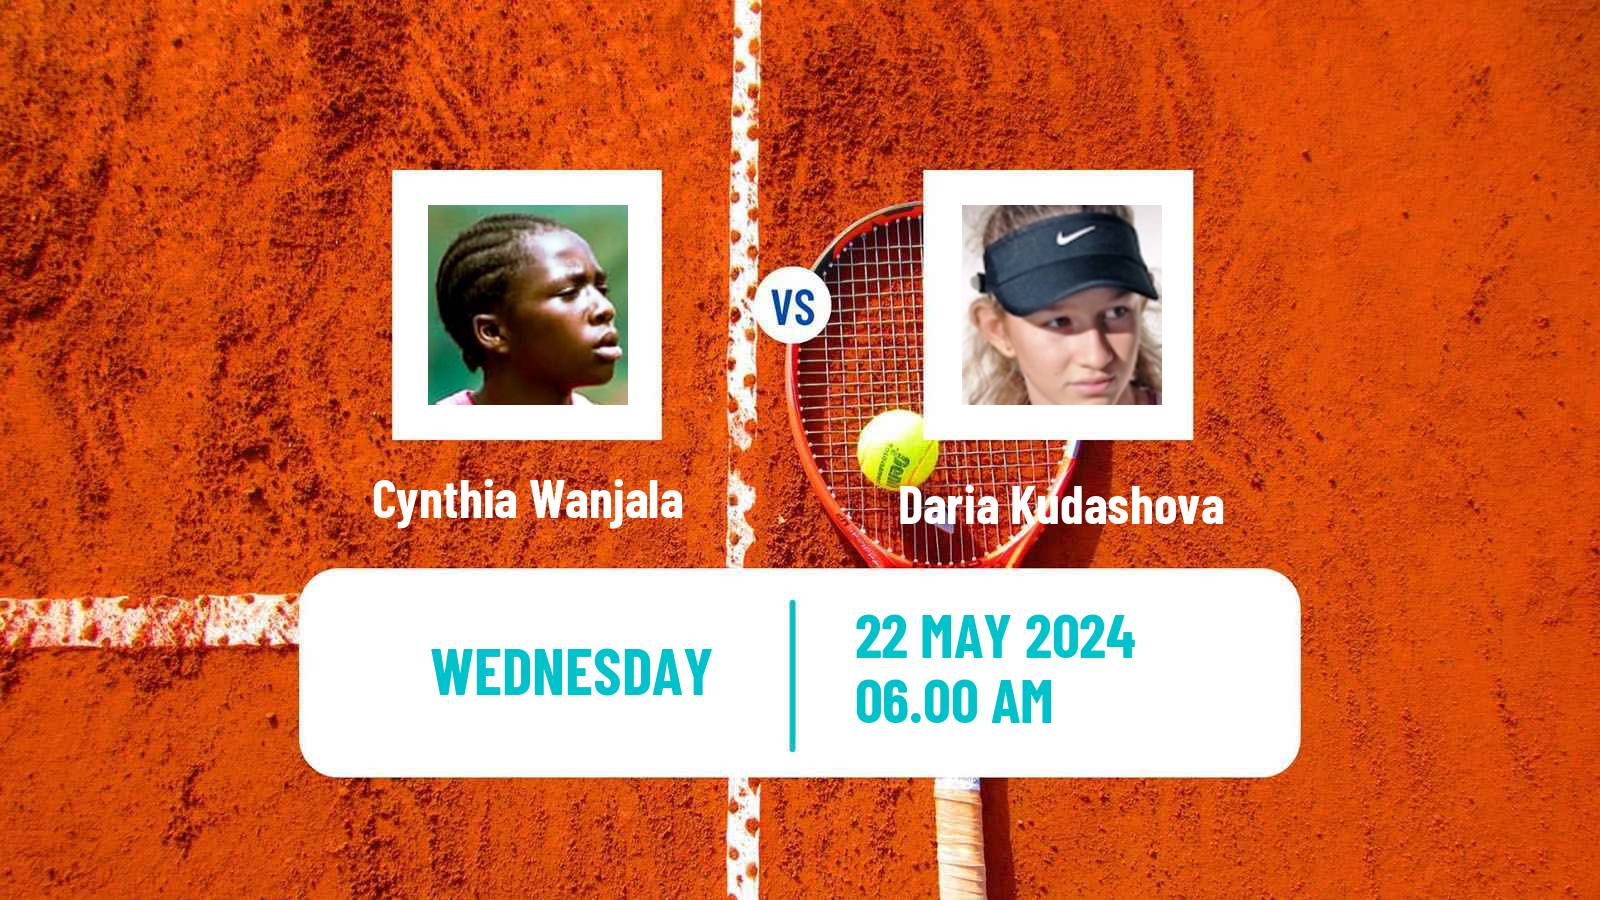 Tennis ITF W15 Monastir 19 Women Cynthia Wanjala - Daria Kudashova